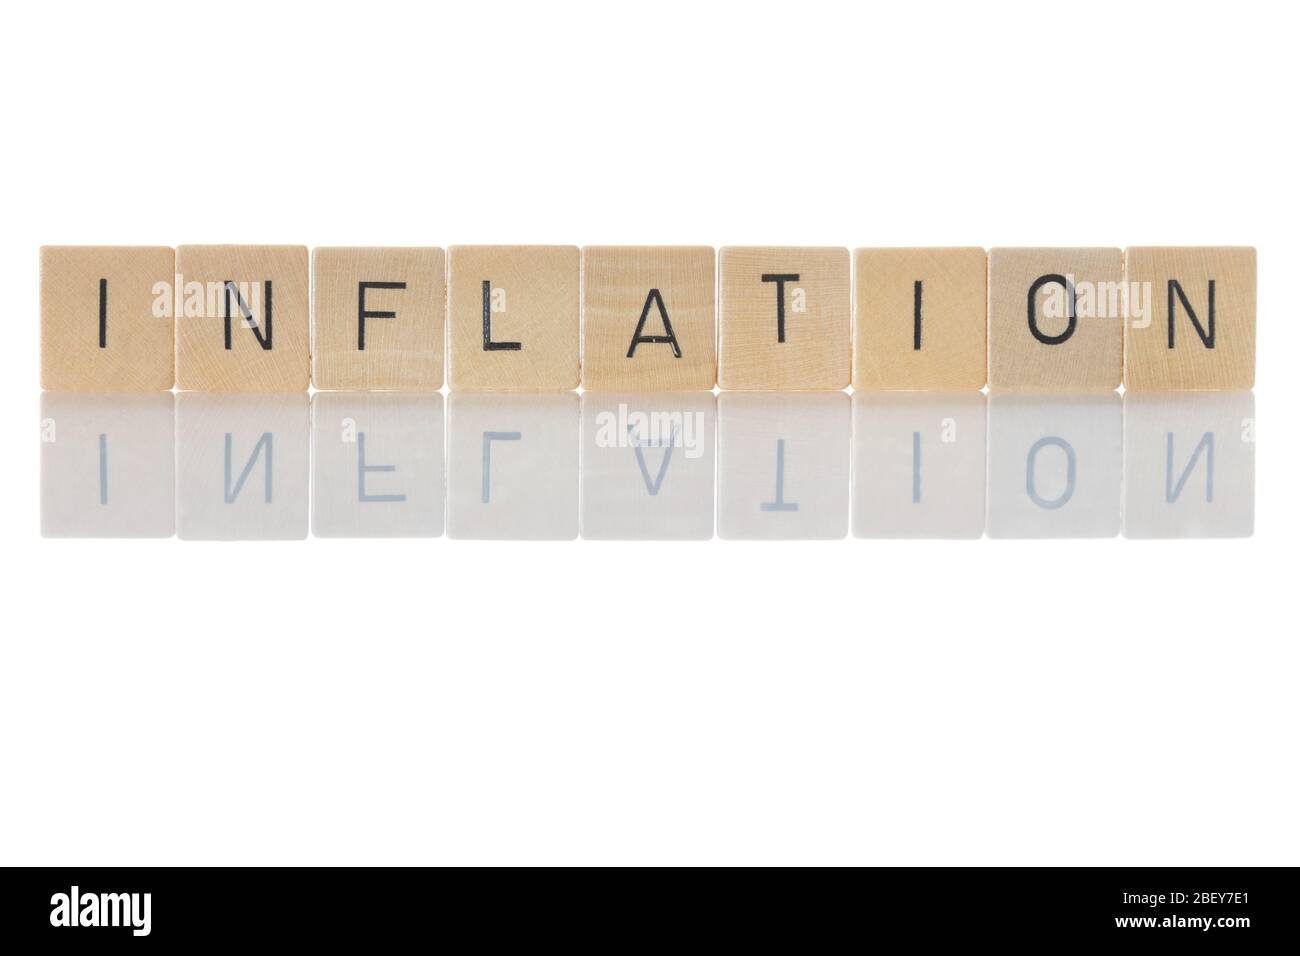 Inflazione, svalutazione monetaria dovuta a un aumento sostenuto del livello dei prezzi di beni e servizi. 'Inflazione' come una parola isolata su sfondo bianco Foto Stock